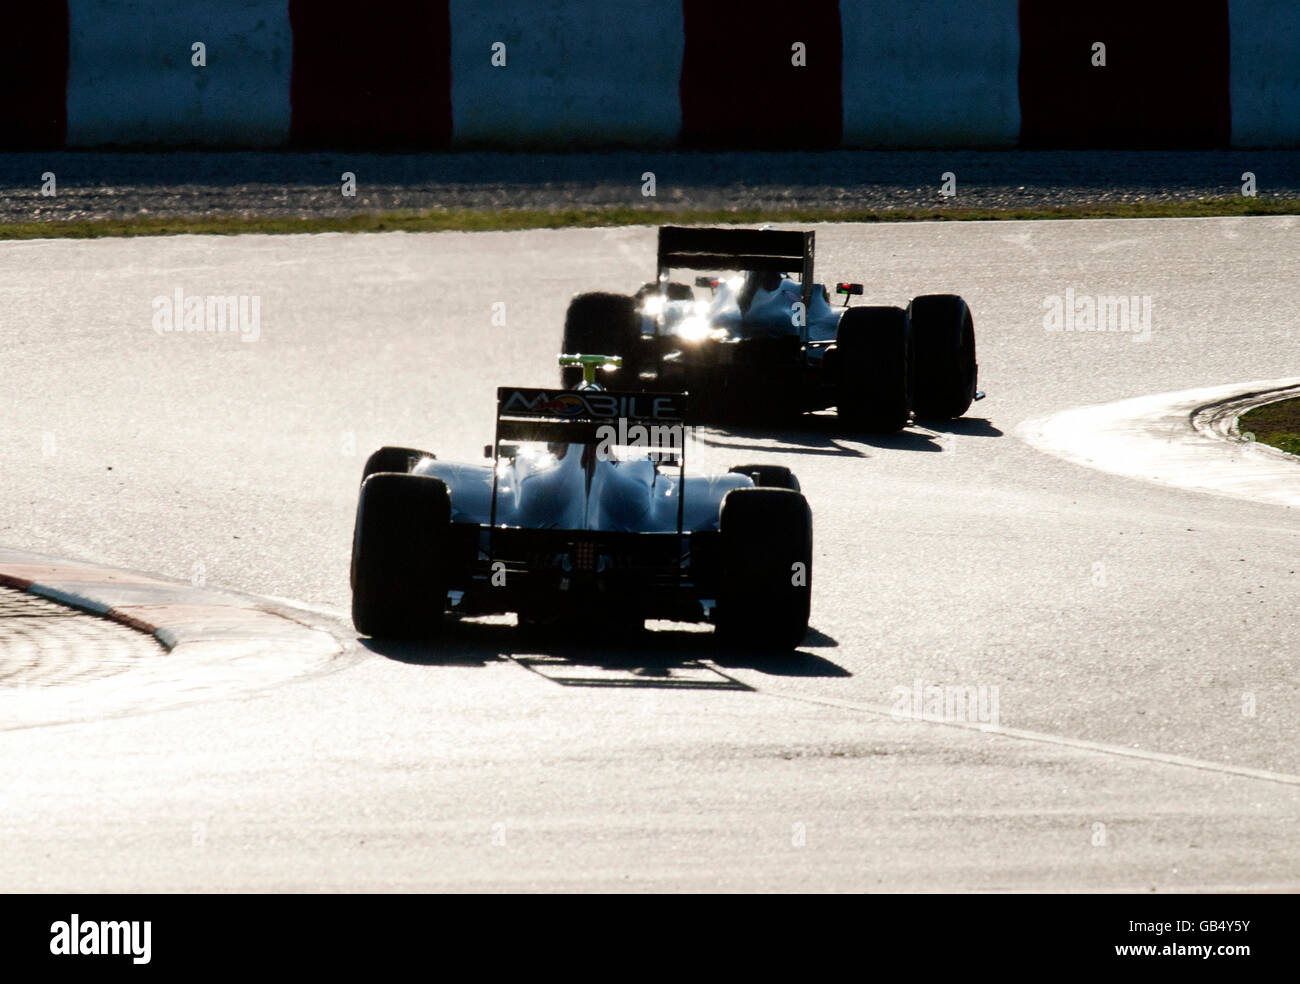 Zwei Autos, Formel-1-Tests auf dem Circuit de Catalunya Rennen verfolgen in Barcelona, Spanien, Europa Stockfoto